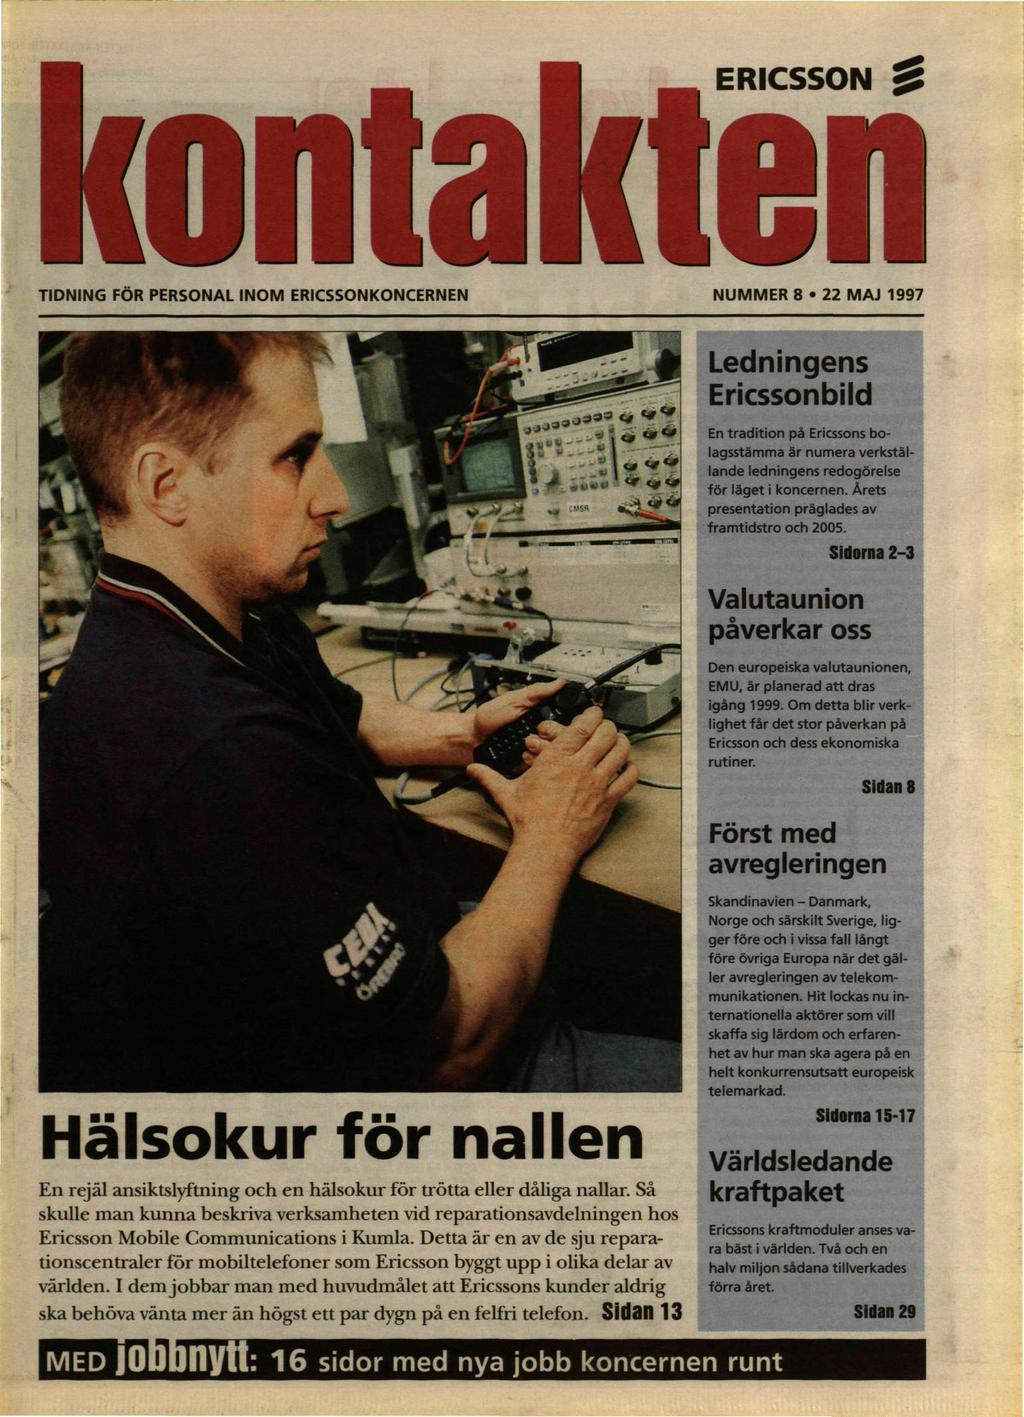 TIDNING FÖR PERSONAL INOM ERICSSONKONCERNEN NUMMER 8 22 MAJ 1997 Ledningens Ericssonbild En tradition på Ericssons bolagsstämma är numera verkställande ledningens redogörelse för läget i koncernen.